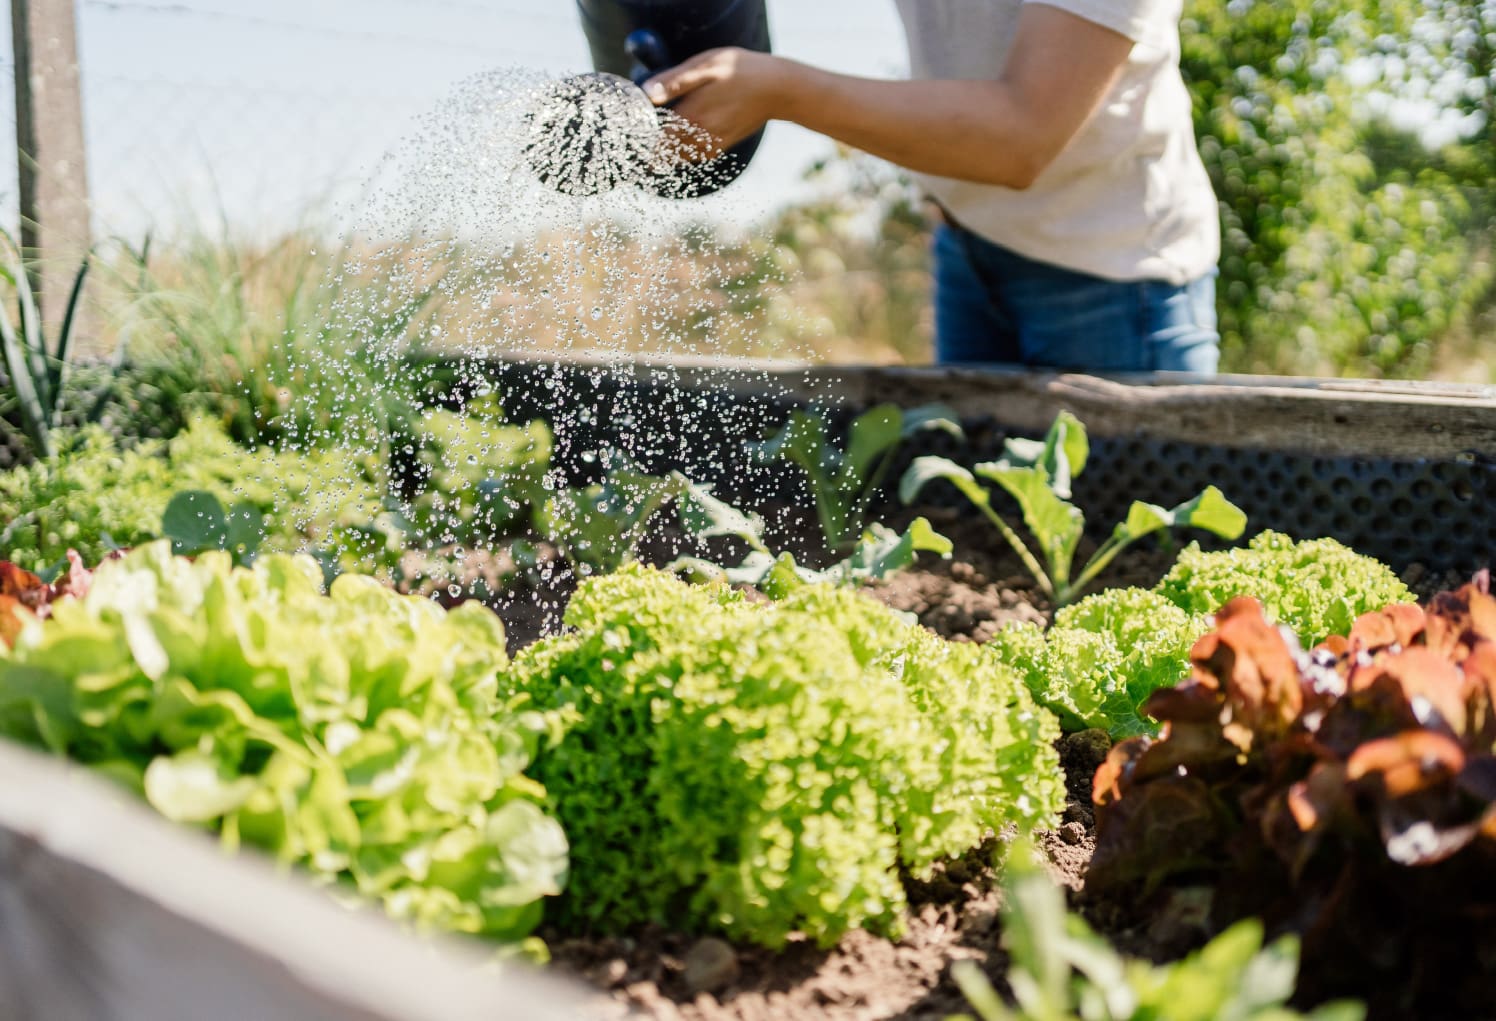 Gardner watering vegetables